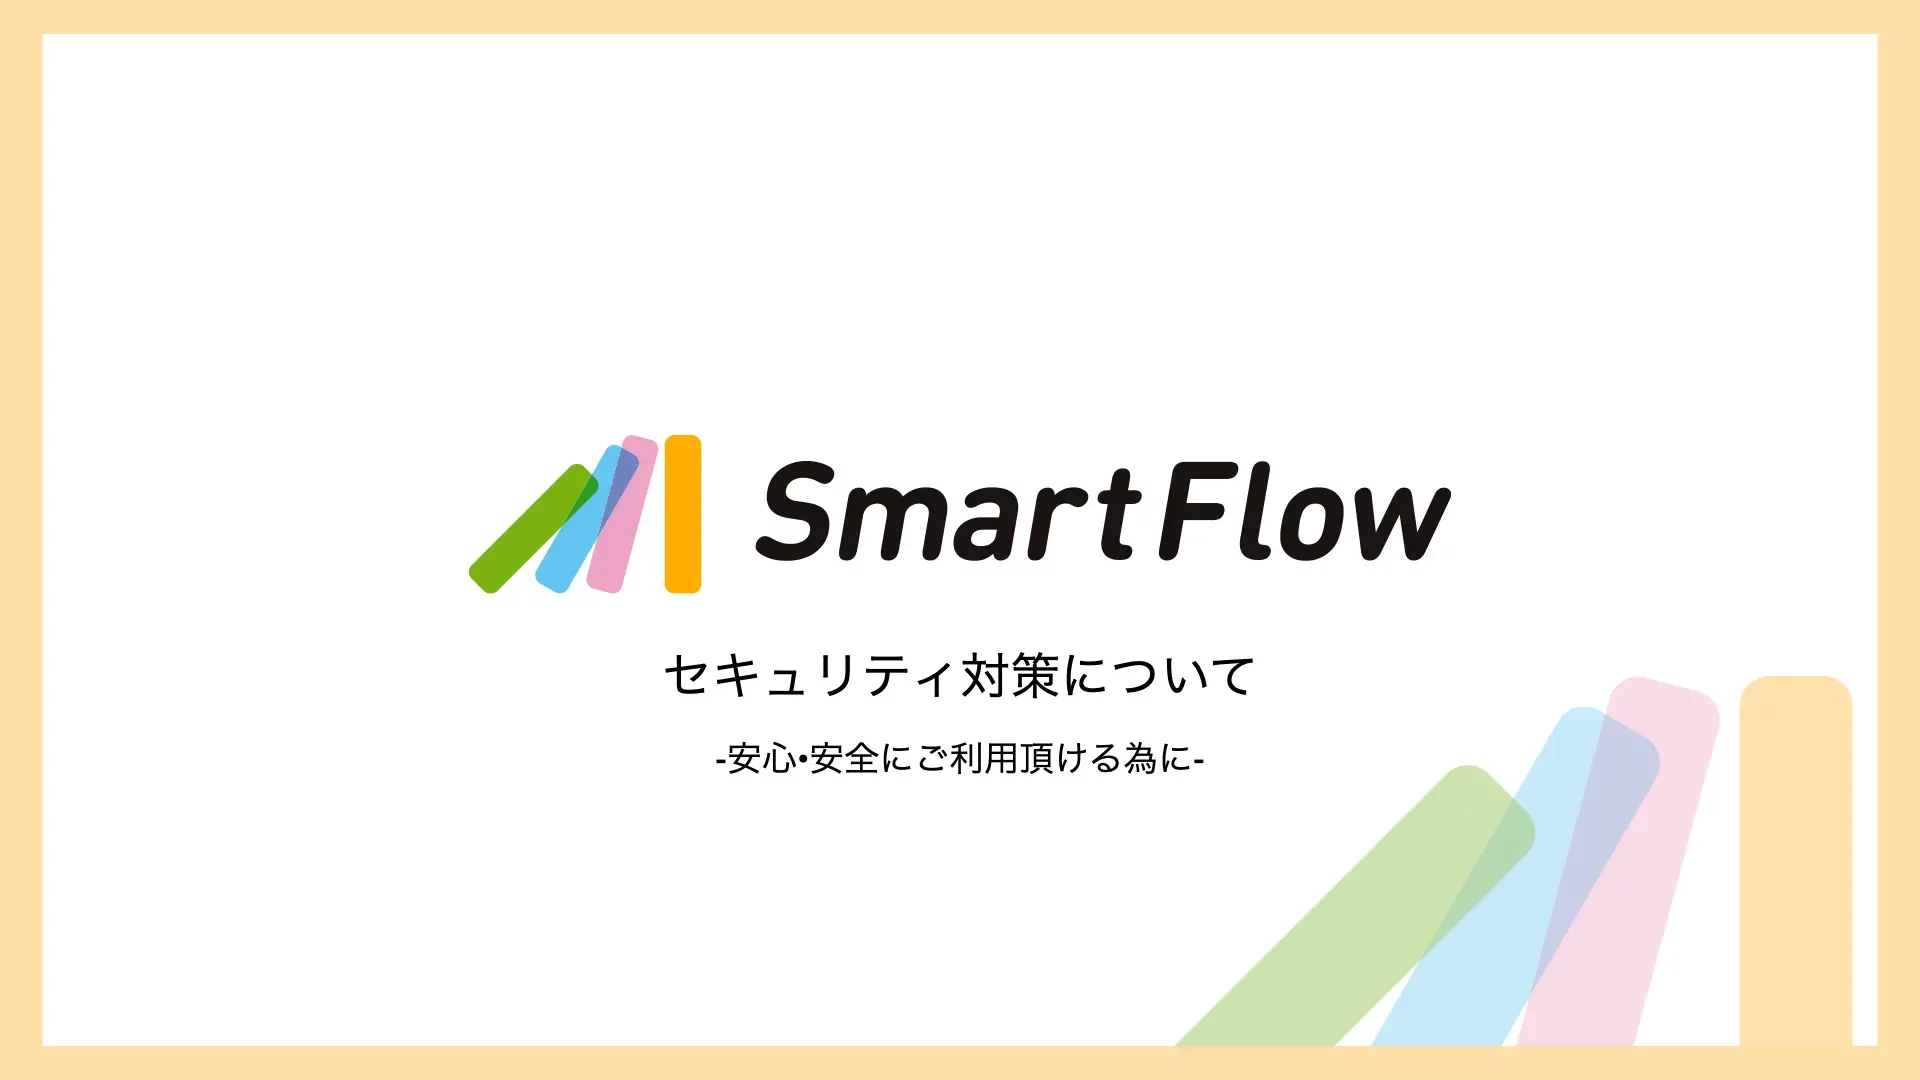 SmartFlow_セキュリティ対策について.001